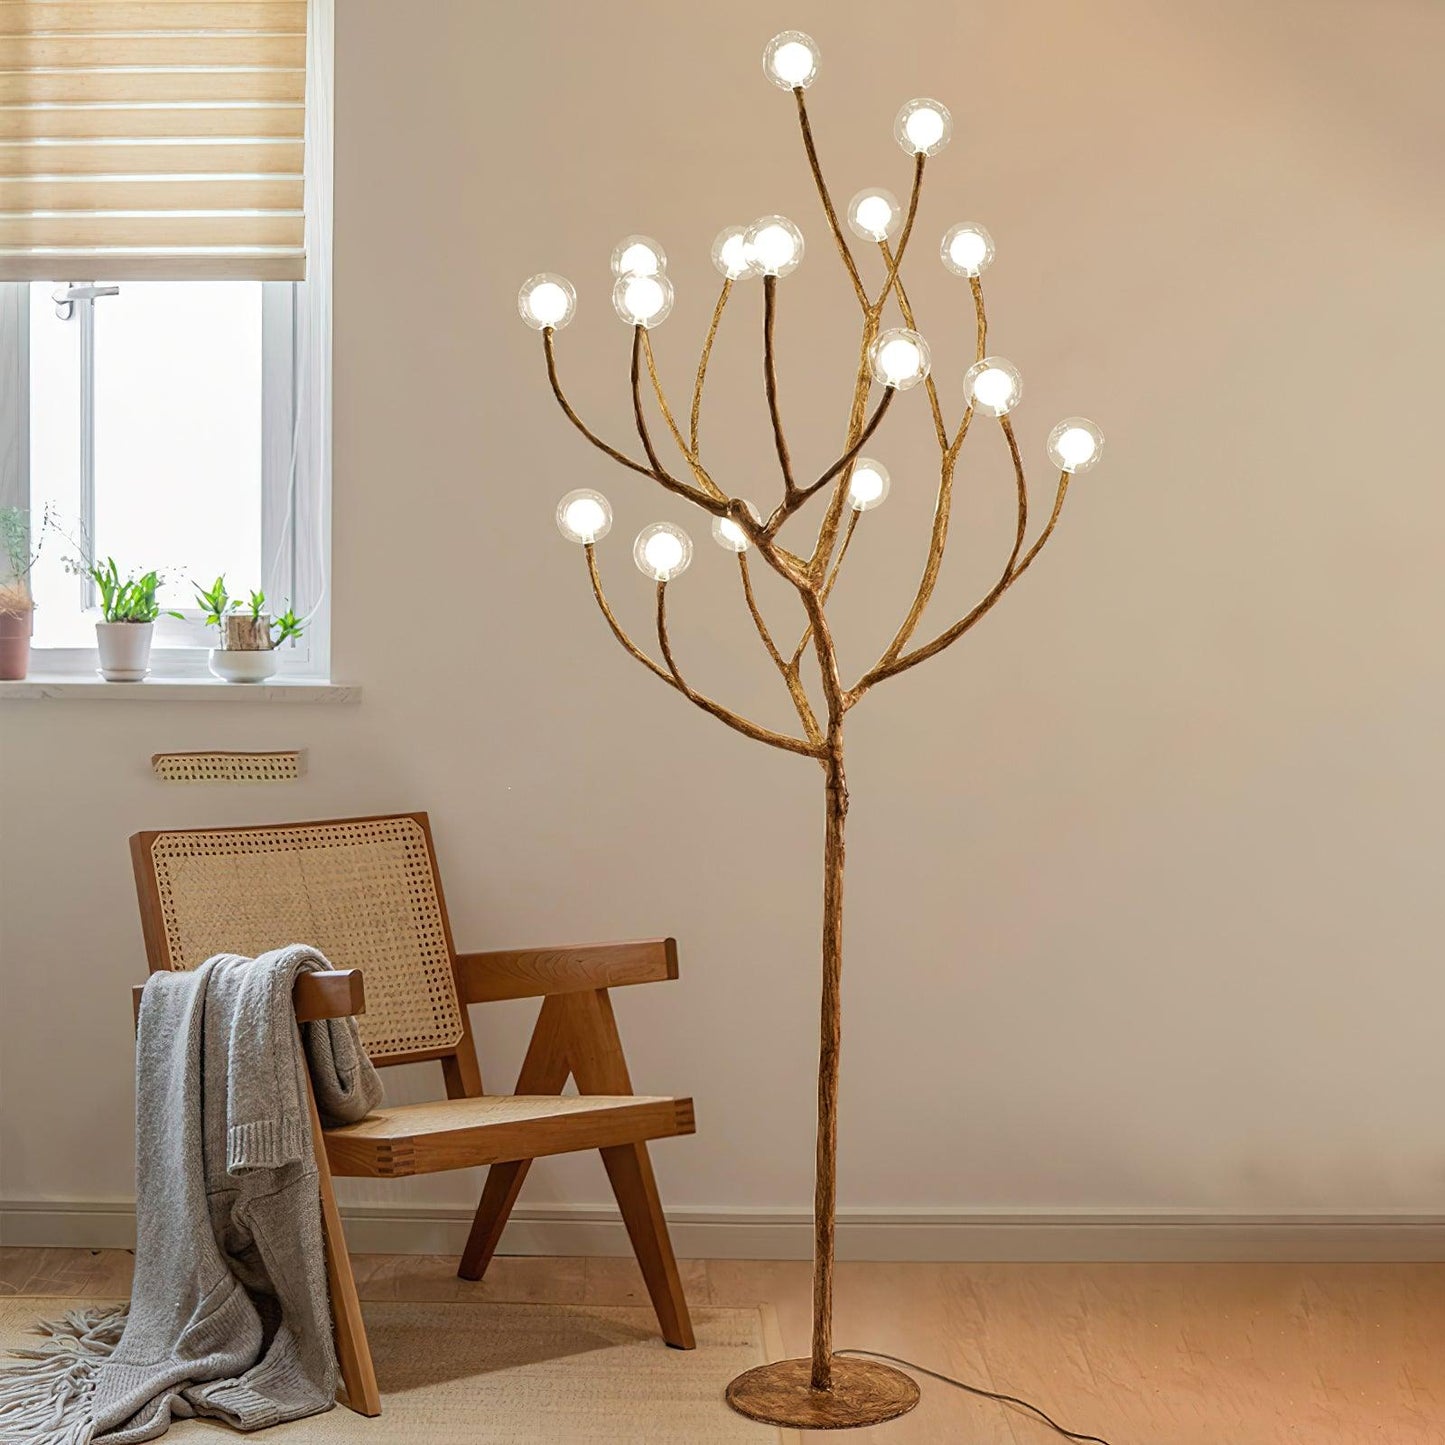 Imitation Wood Floor Lamp